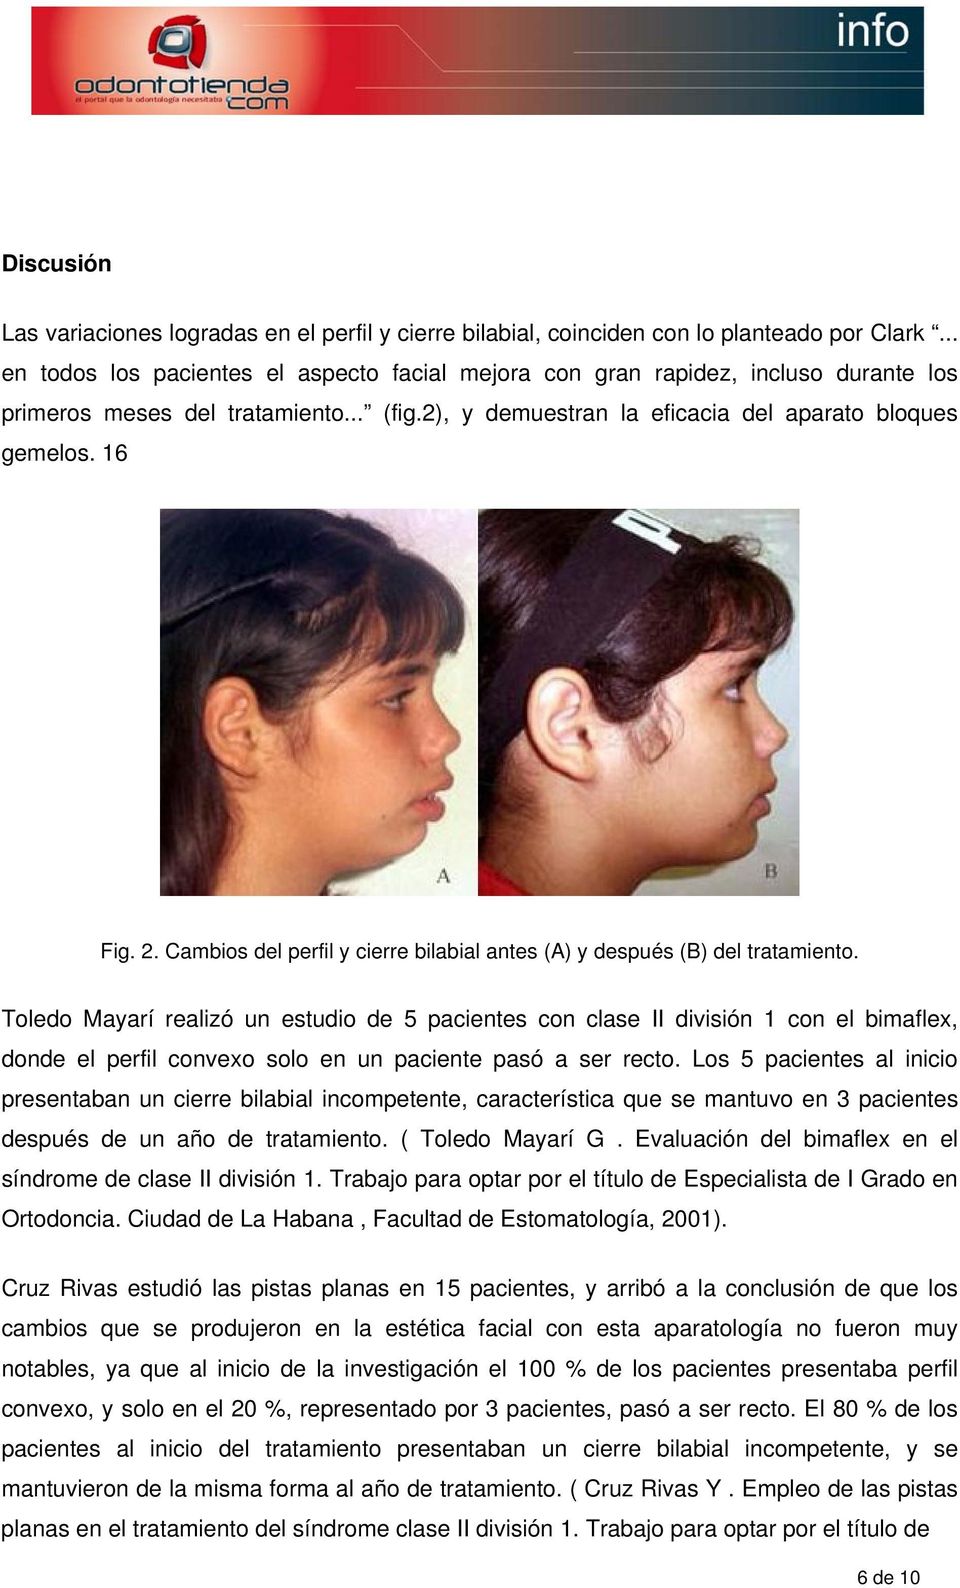 Cambios del perfil y cierre bilabial antes (A) y después (B) del tratamiento.